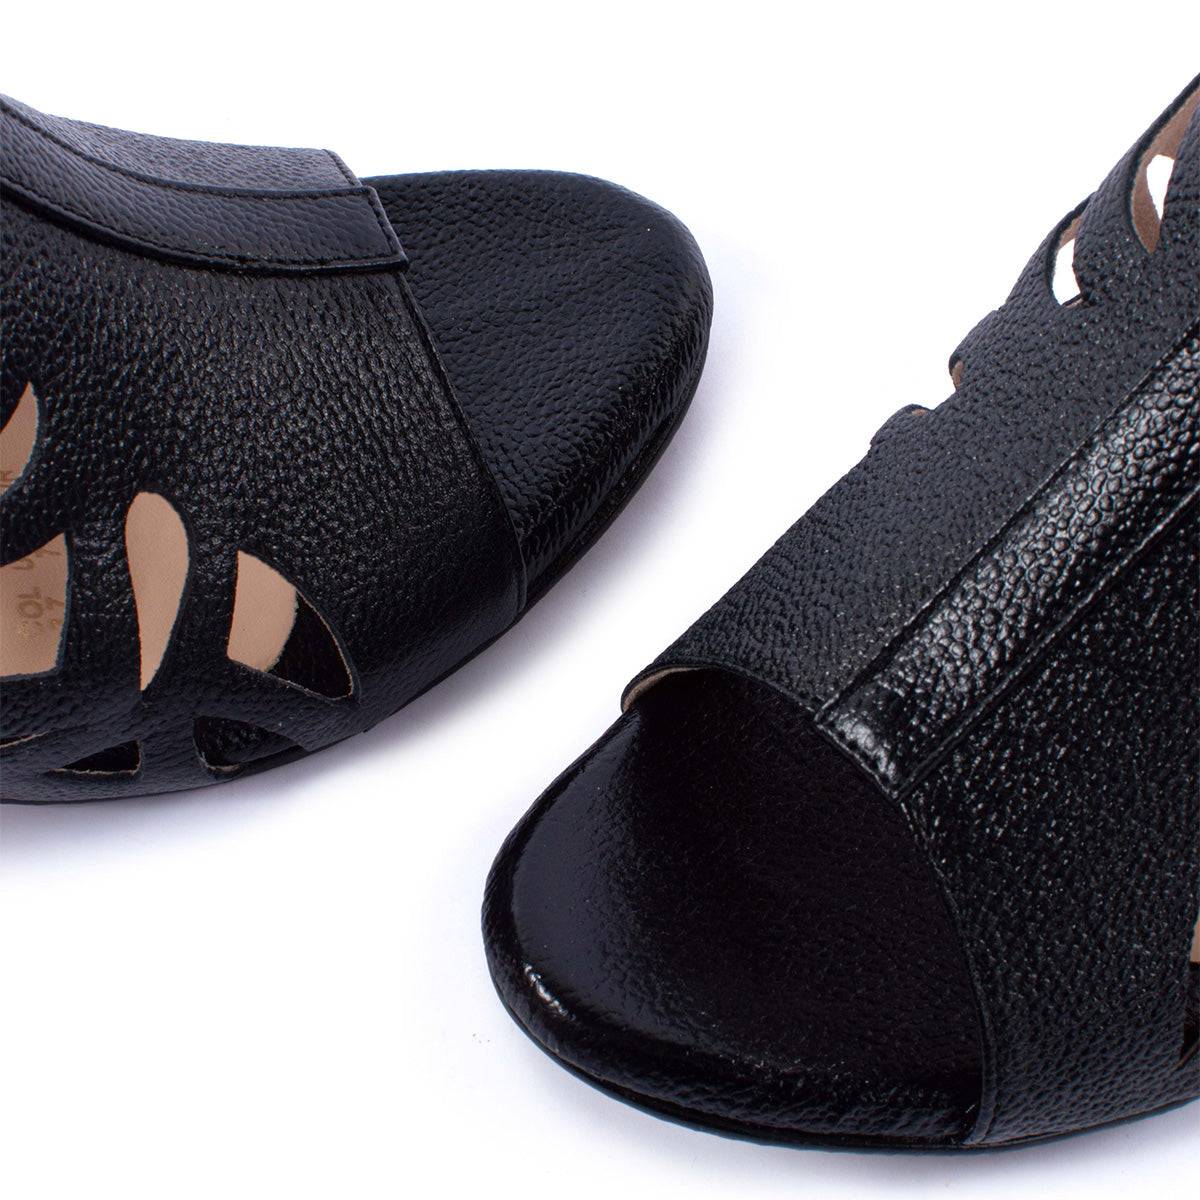 Sandalias altas en cuero color negro con perforaciones